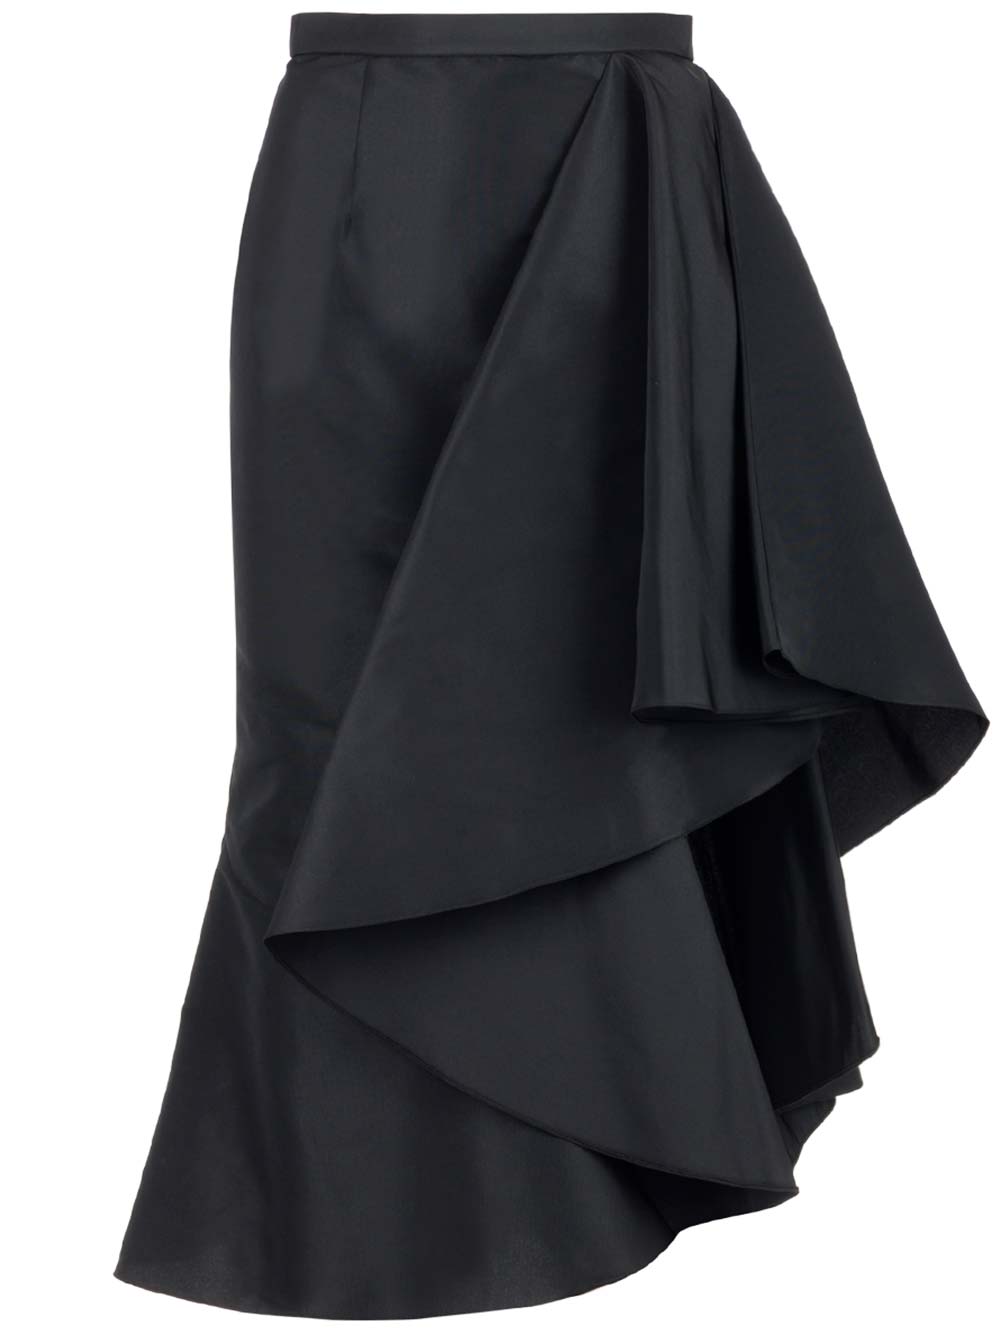 Asymmetric Skirt Midi Skirt